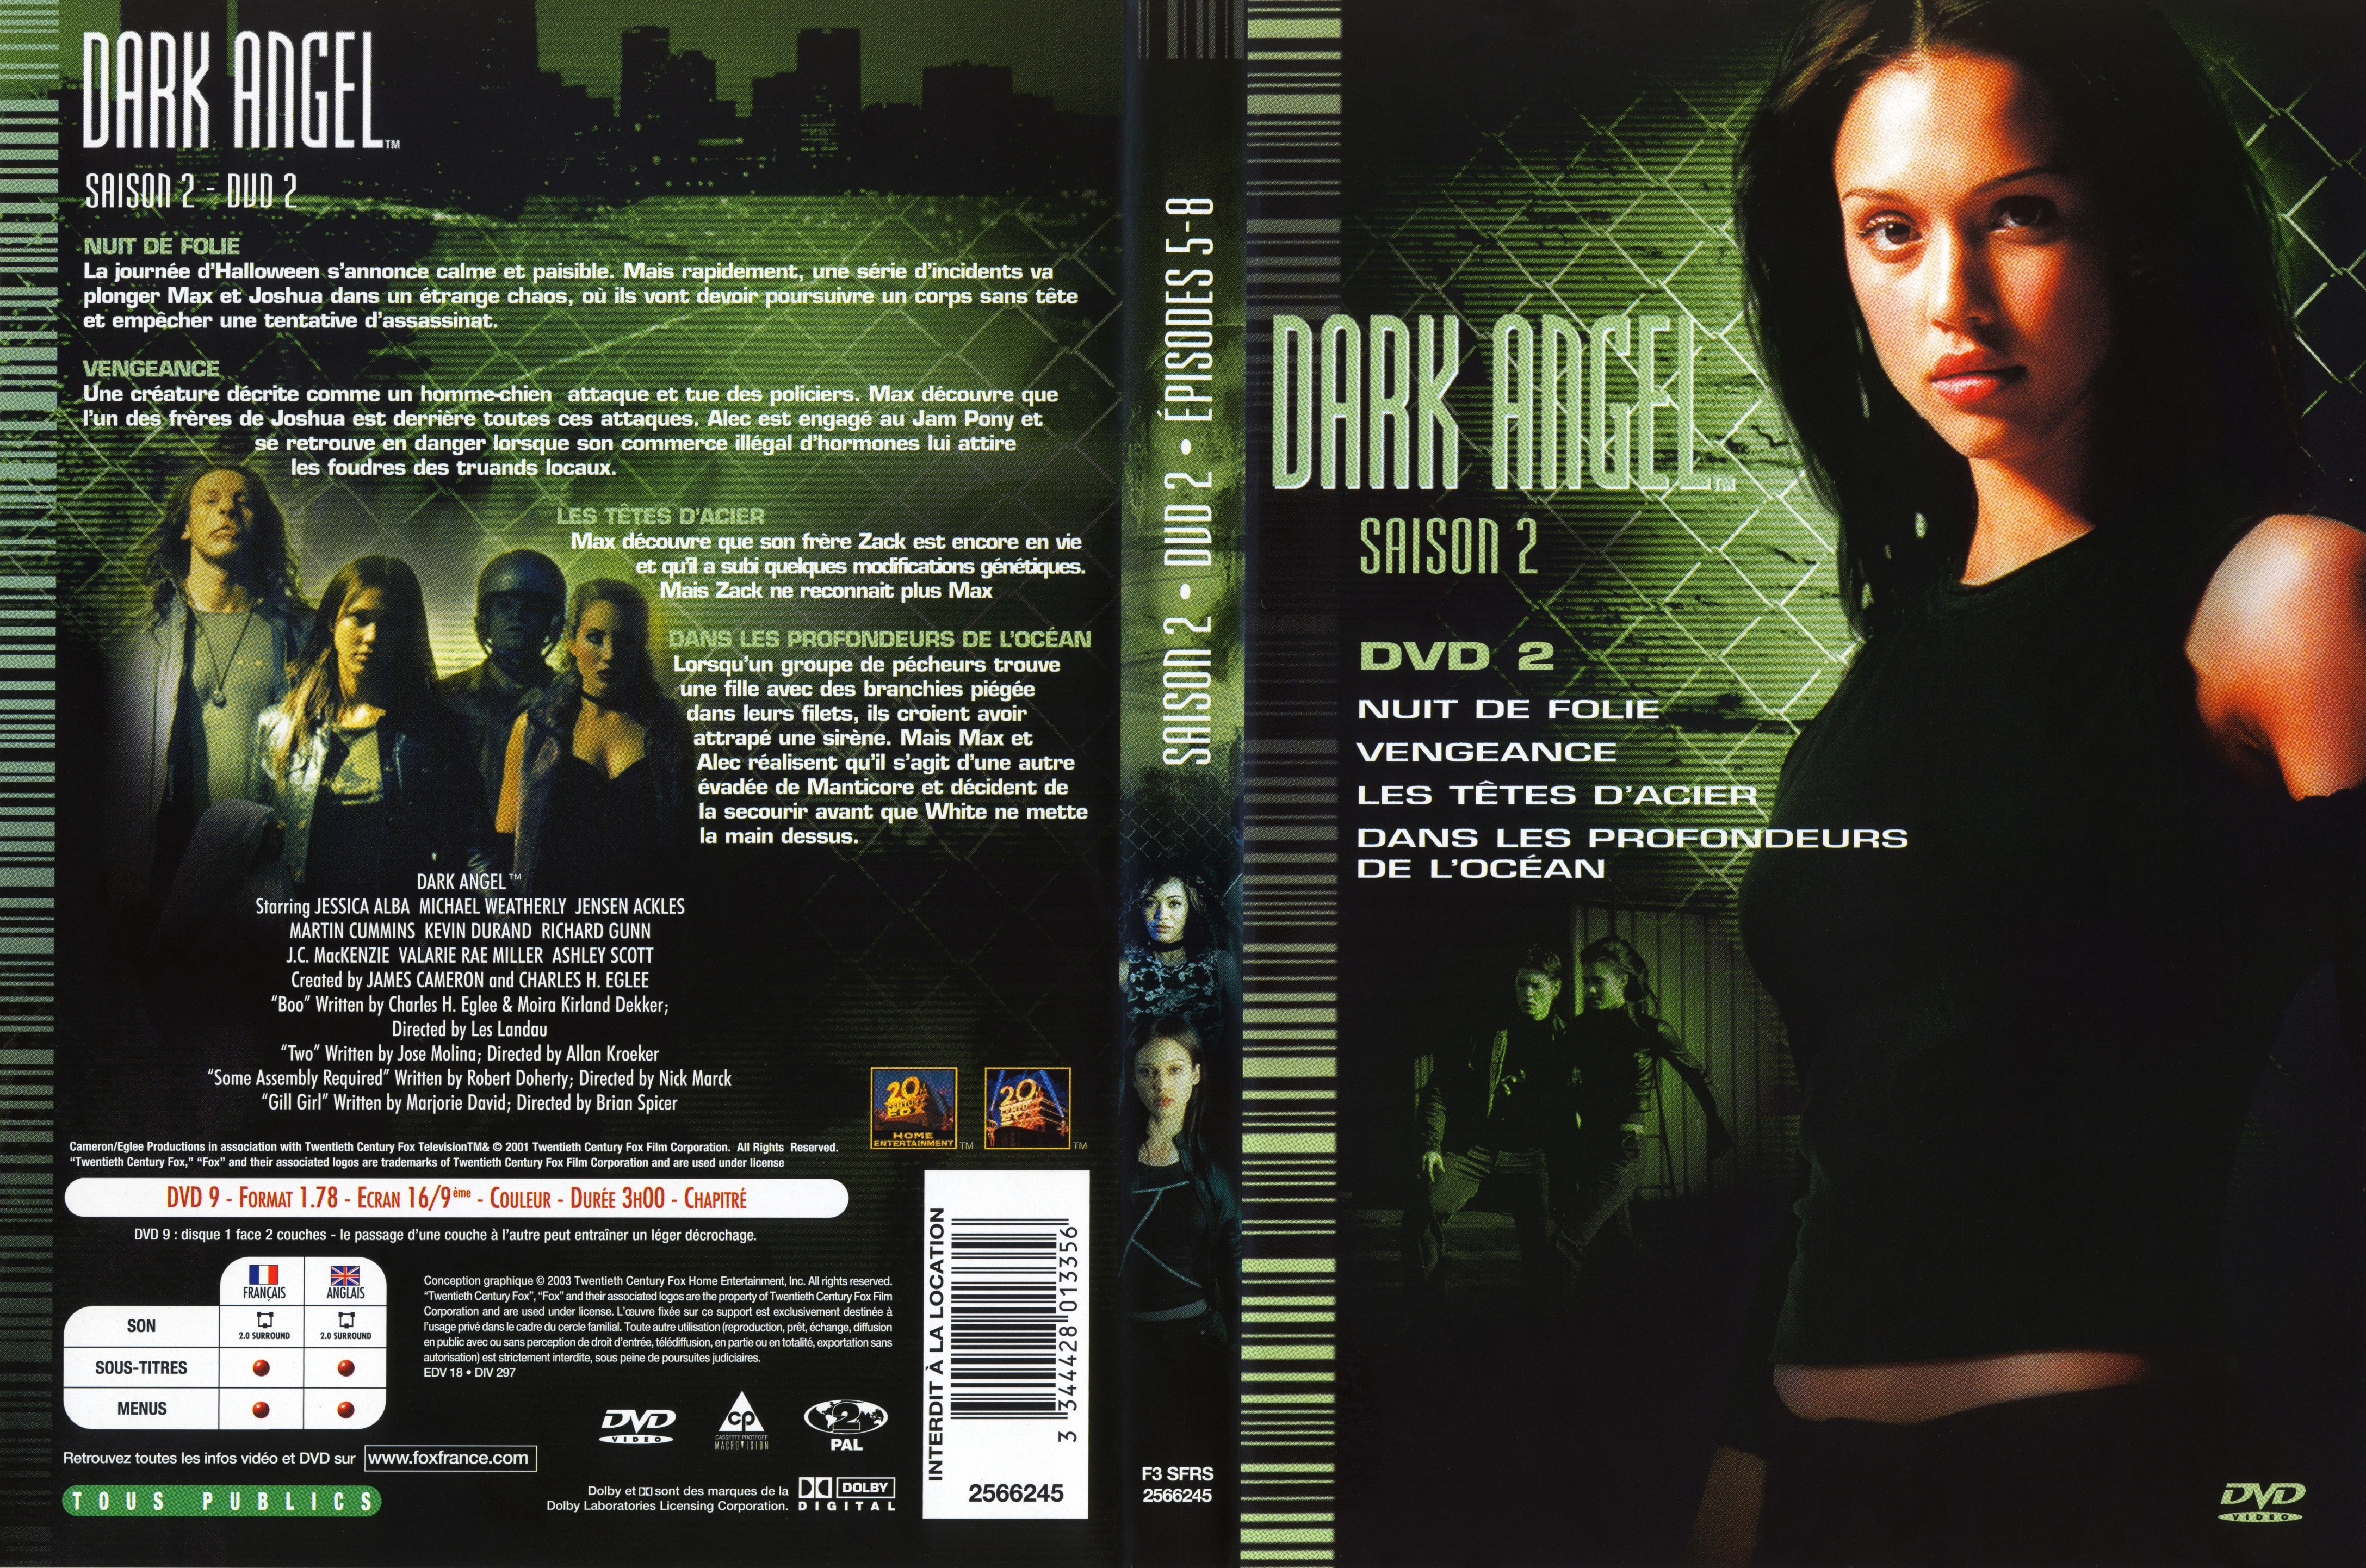 Jaquette DVD Dark Angel Saison 2 DVD 2